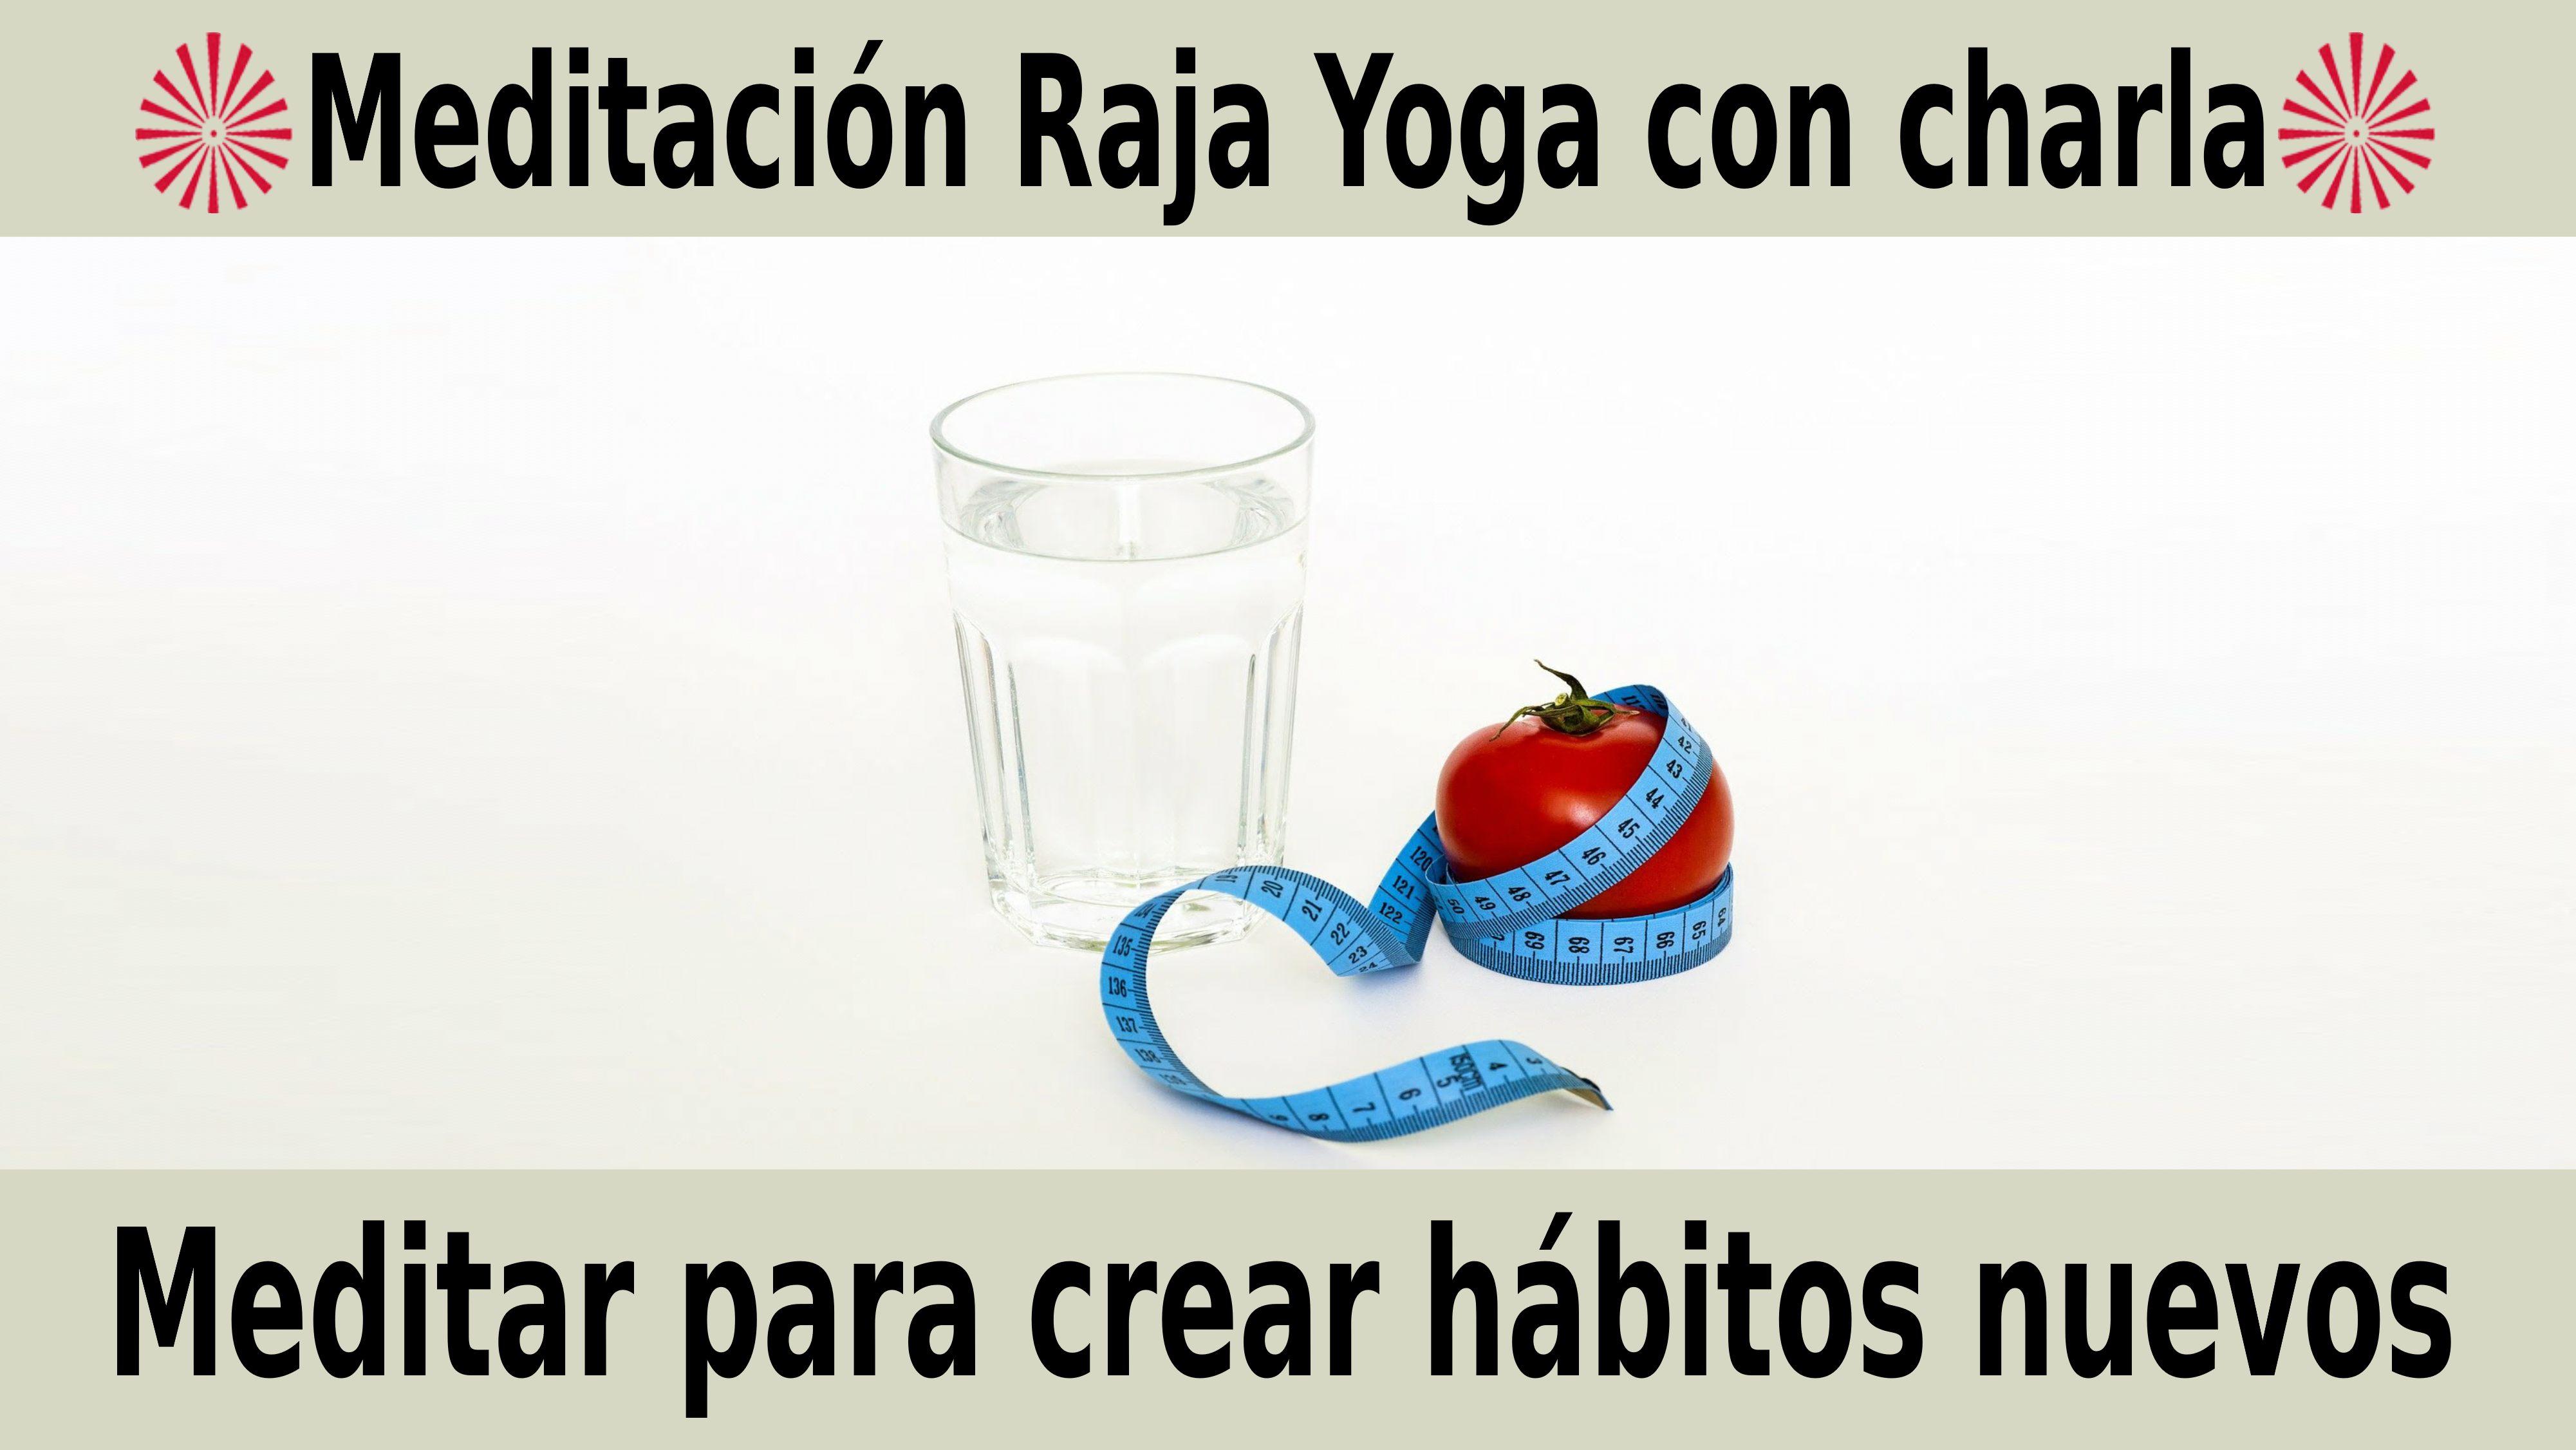 Meditación Raja Yoga con charla: Meditar para crear hábitos nuevos (18 Noviembre 2020) On-line desde Sevilla